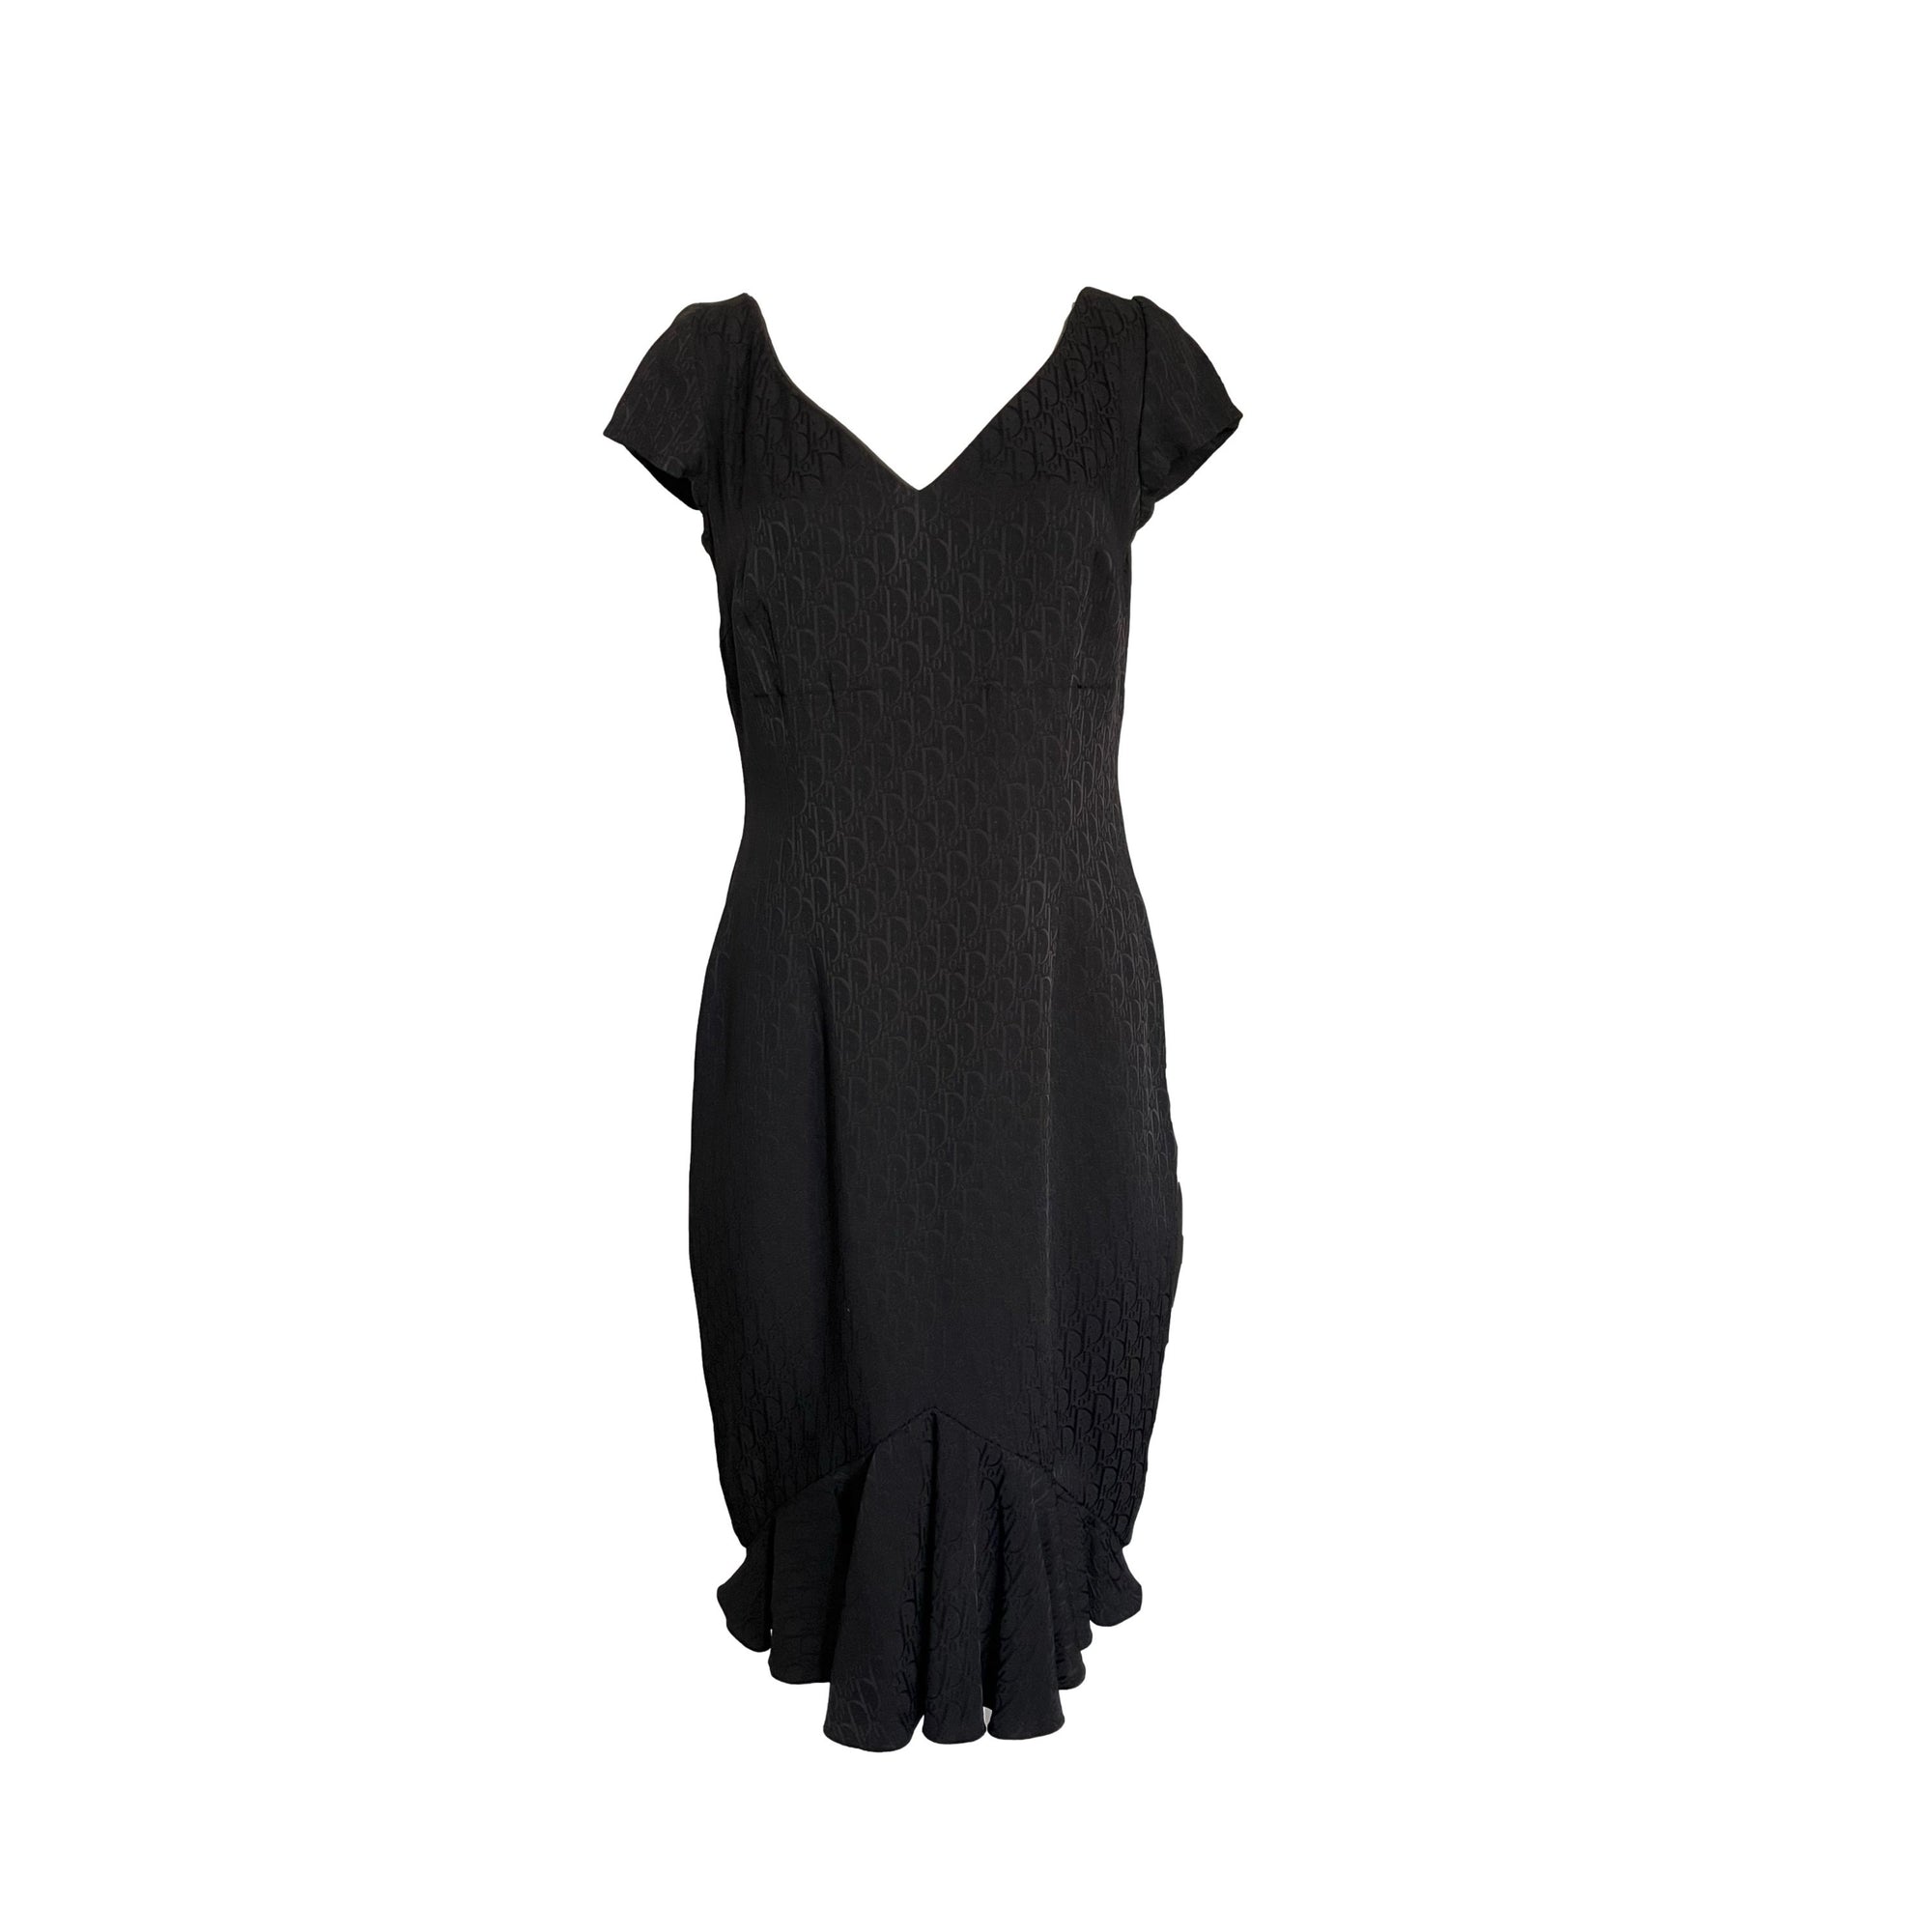 Dior Black Monogram Dress - Apparel